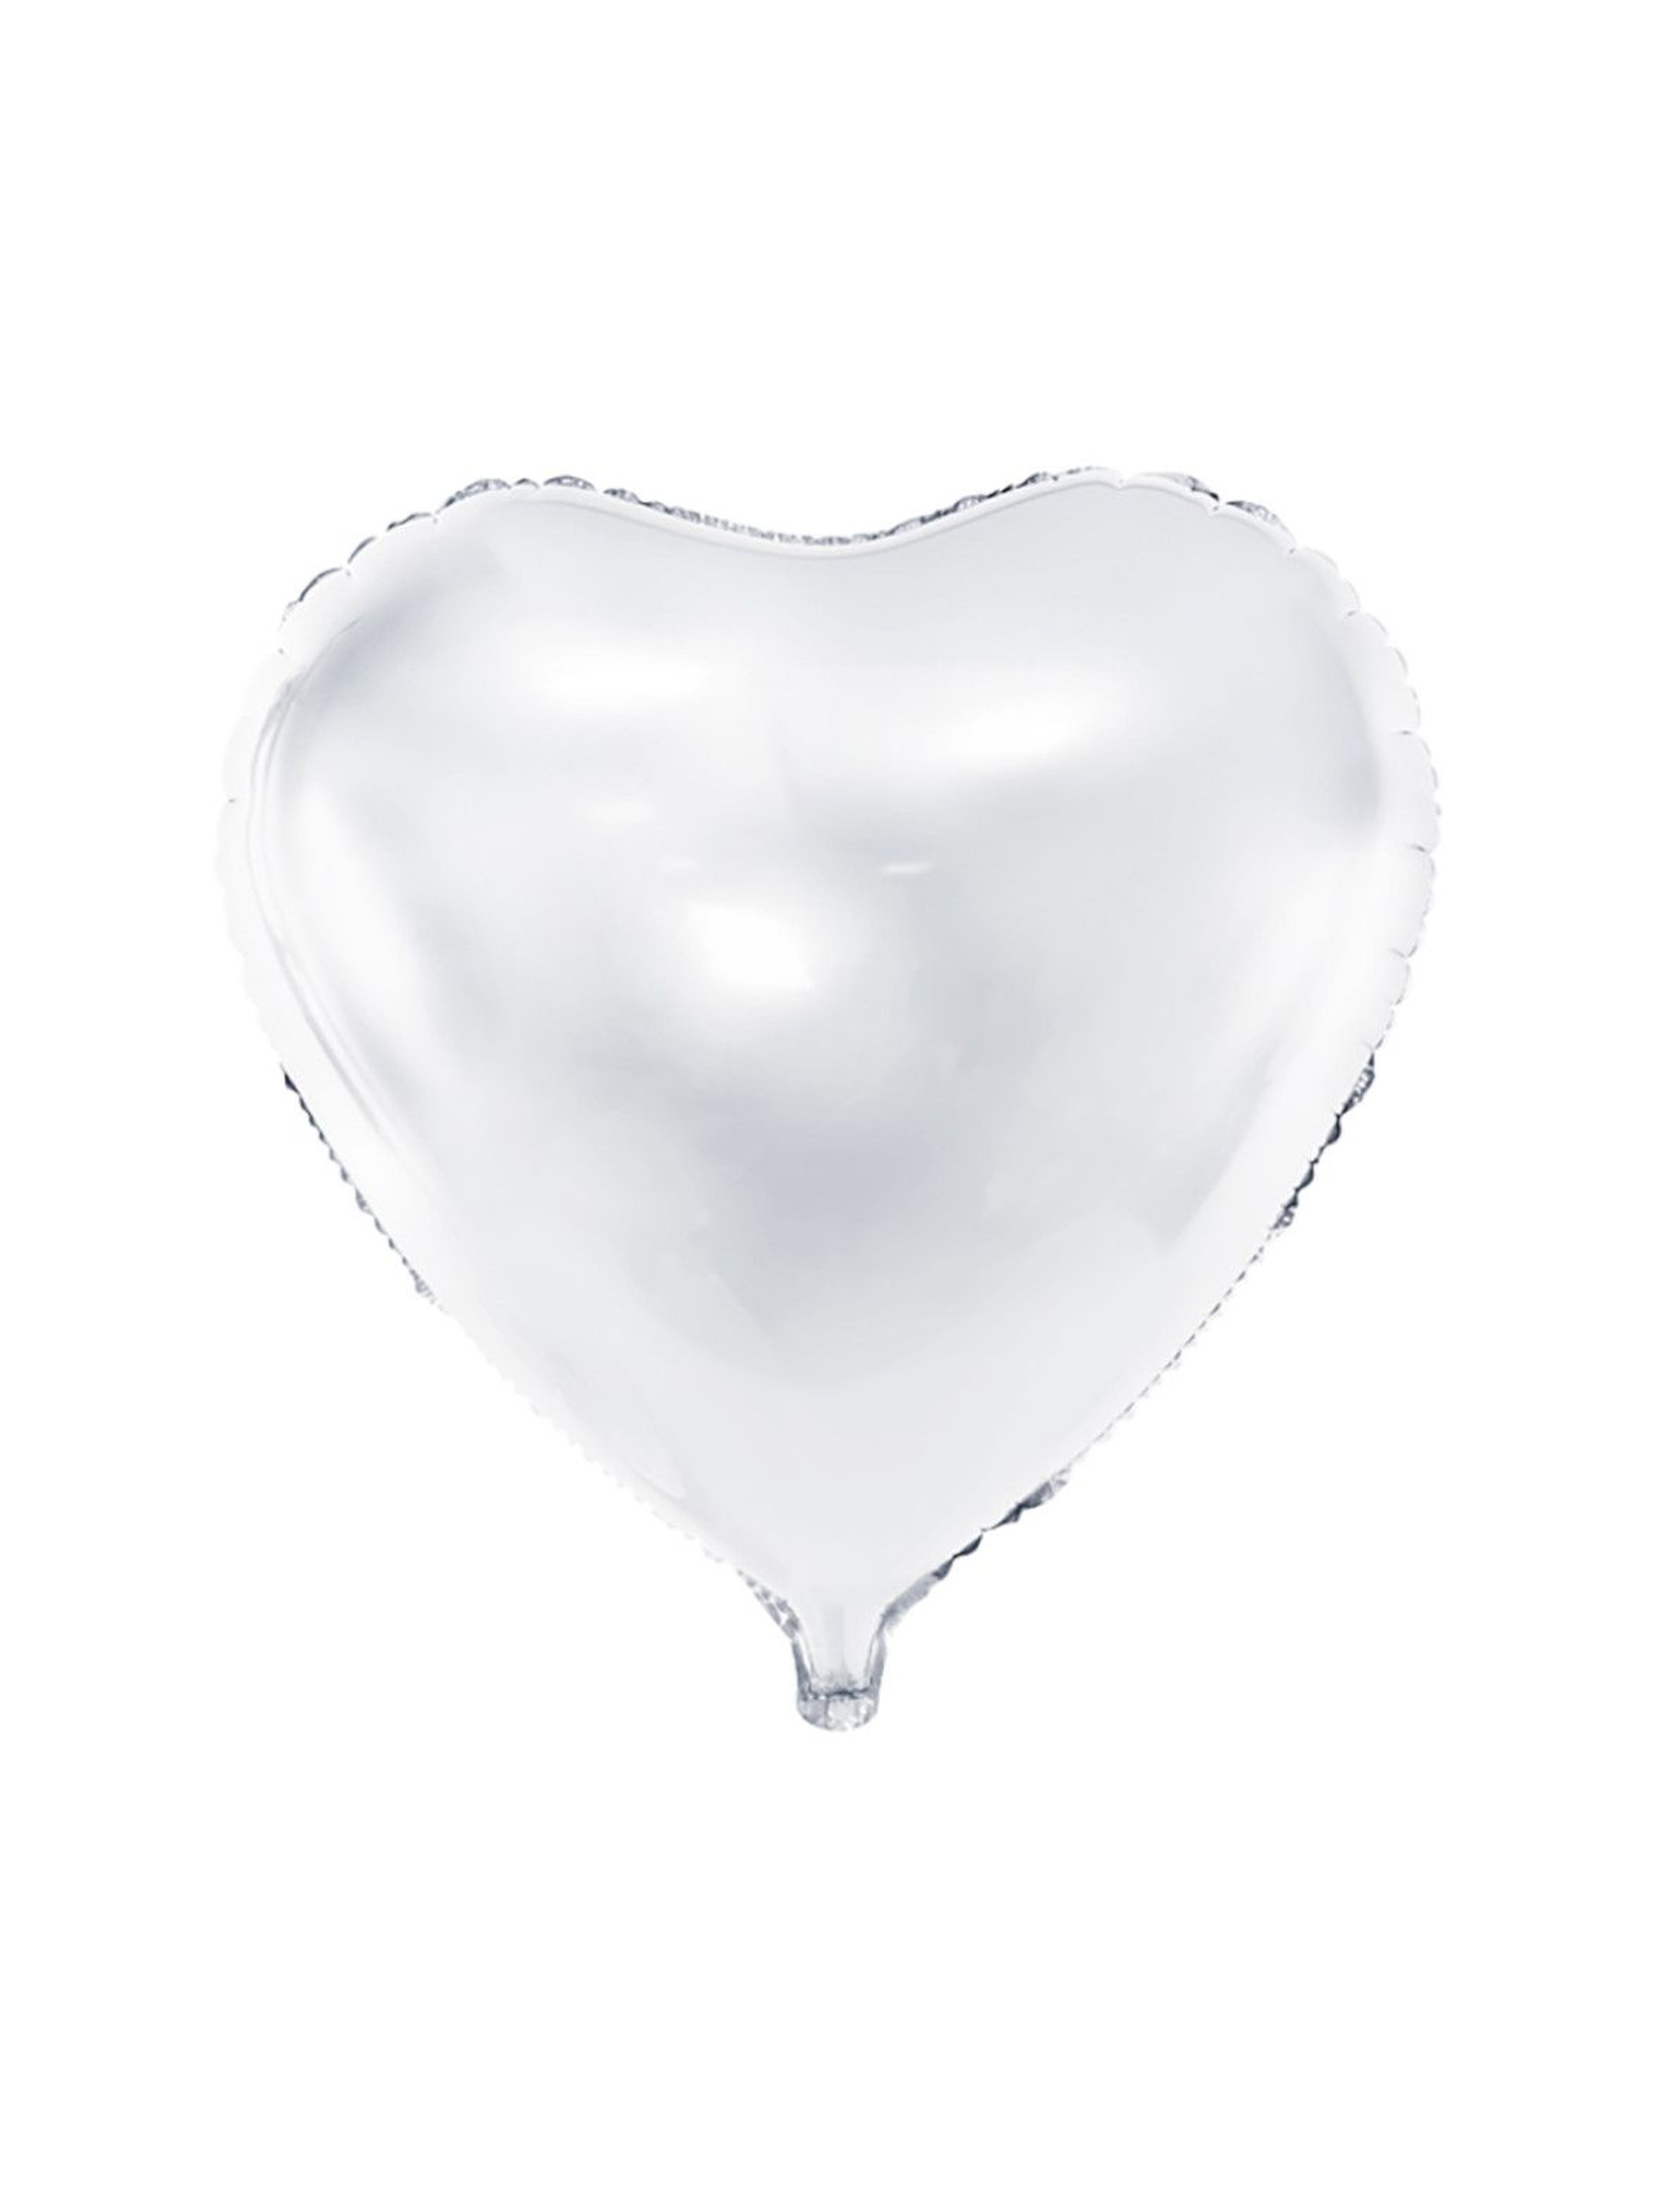 Balon foliowy Serce  61cm - biały